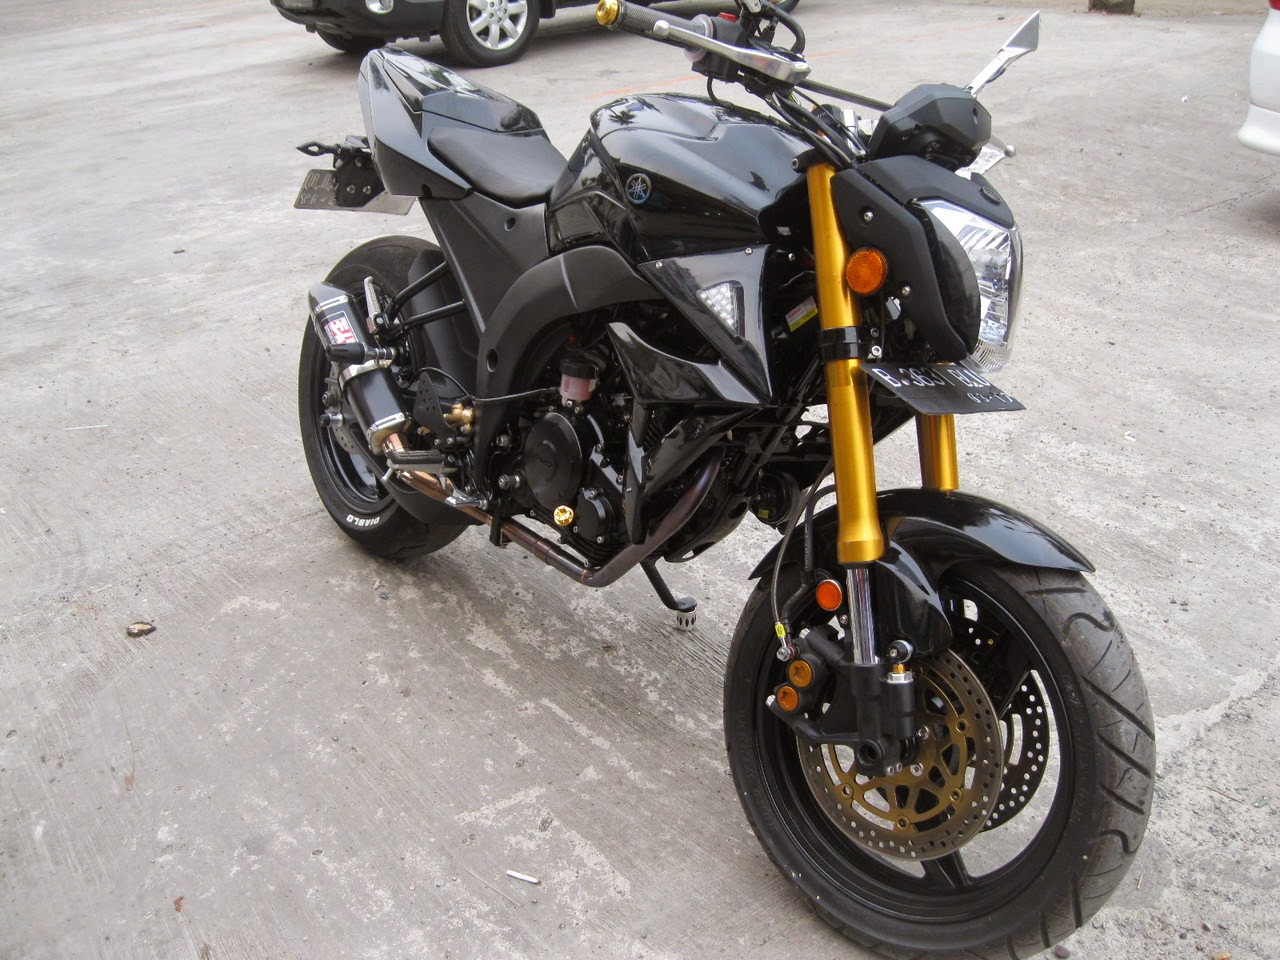 Koleksi Foto Modifikasi Motor Ducati Terbaru Gubuk Modifikasi